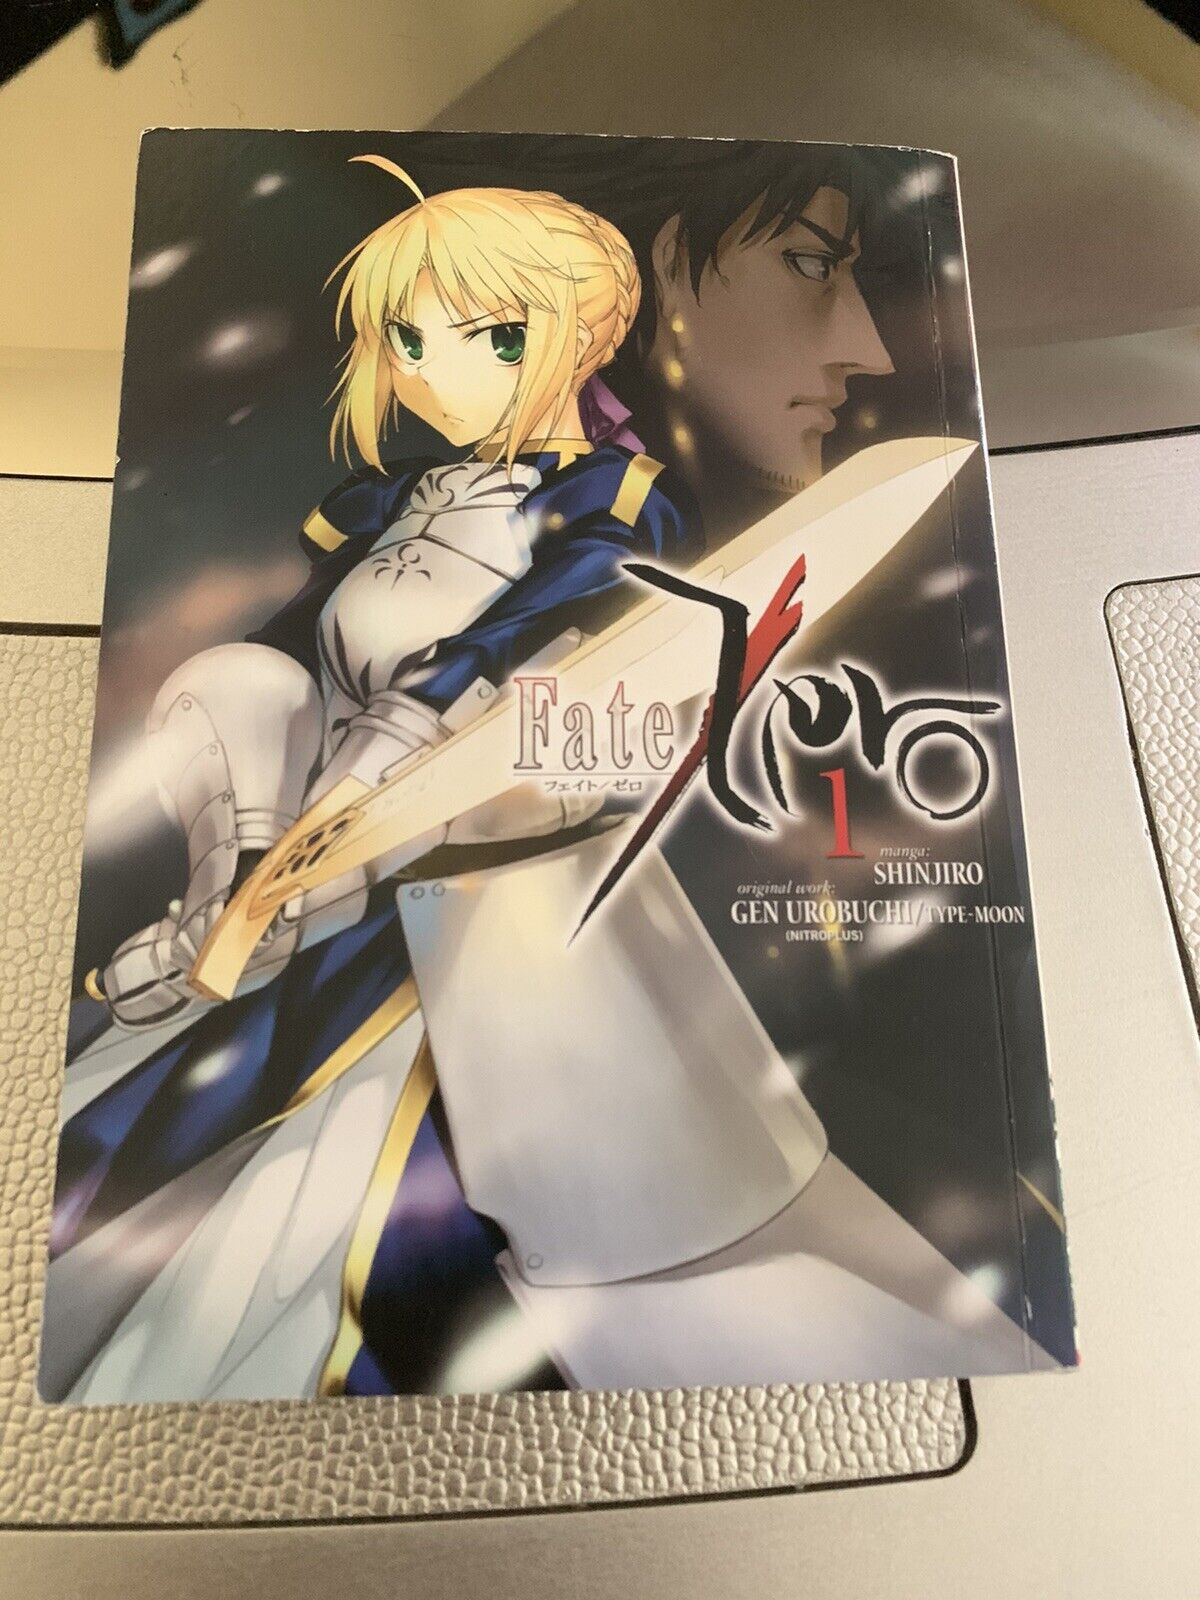 Fate Zero Volume 1 Manga